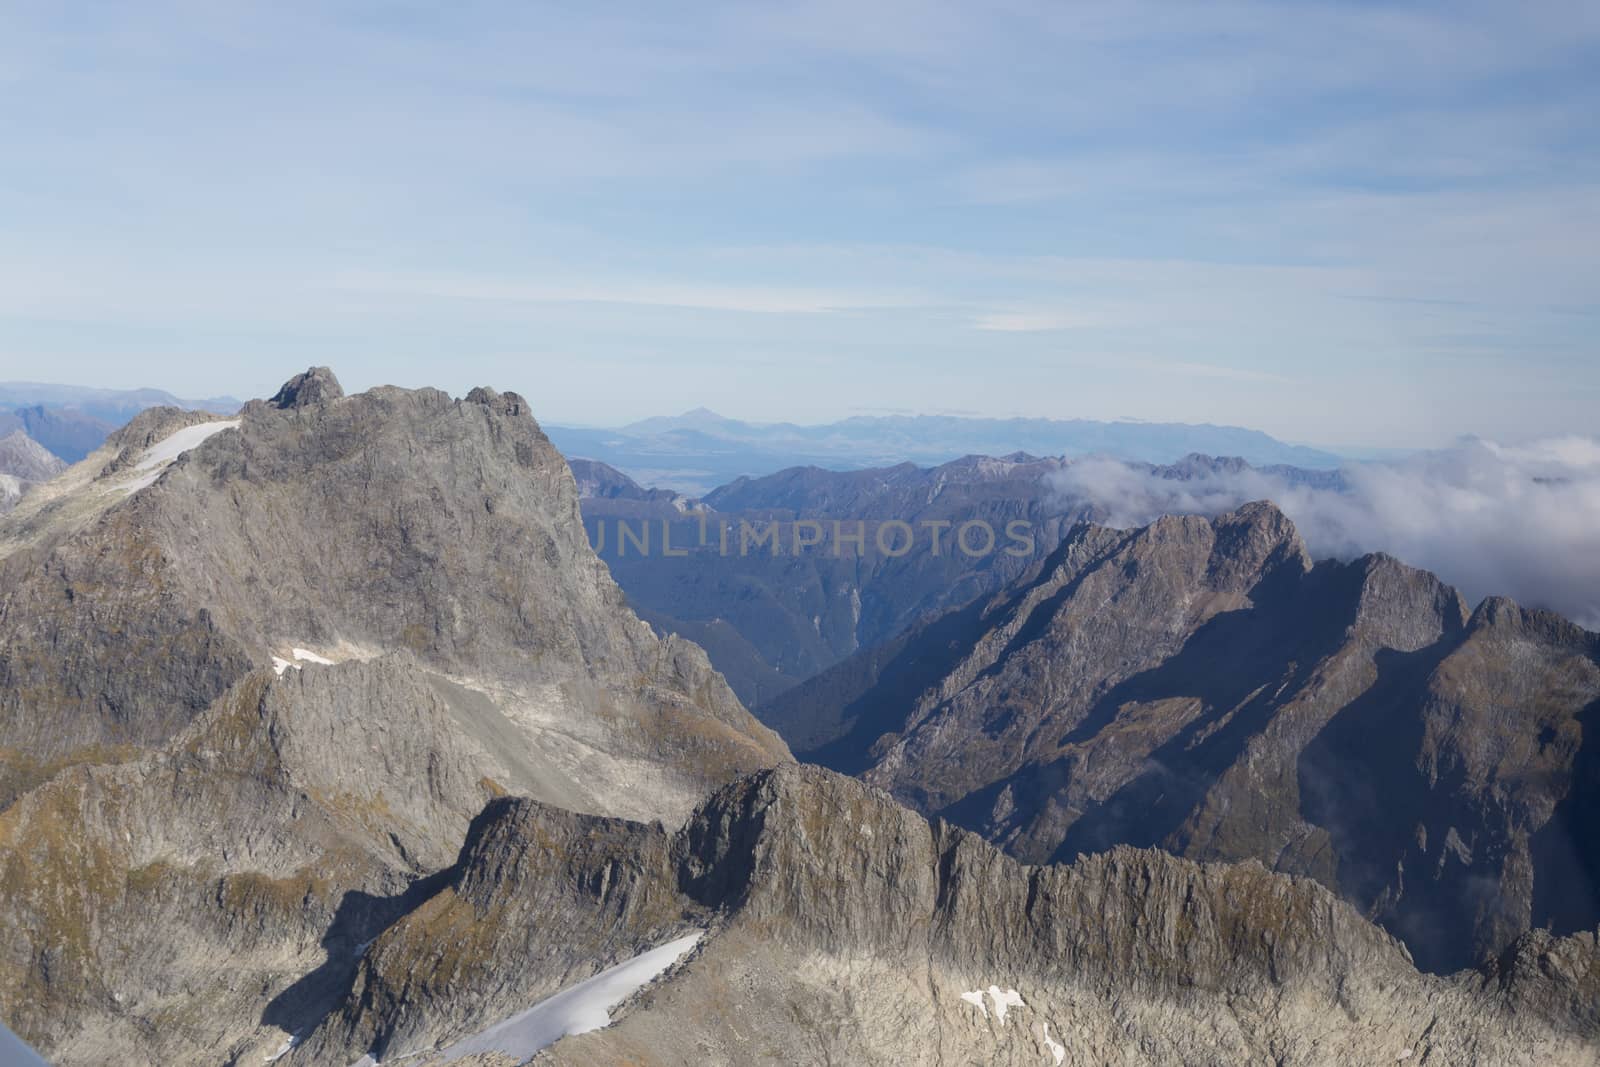 Aerial view Mount Aspiring National Park by oliverfoerstner